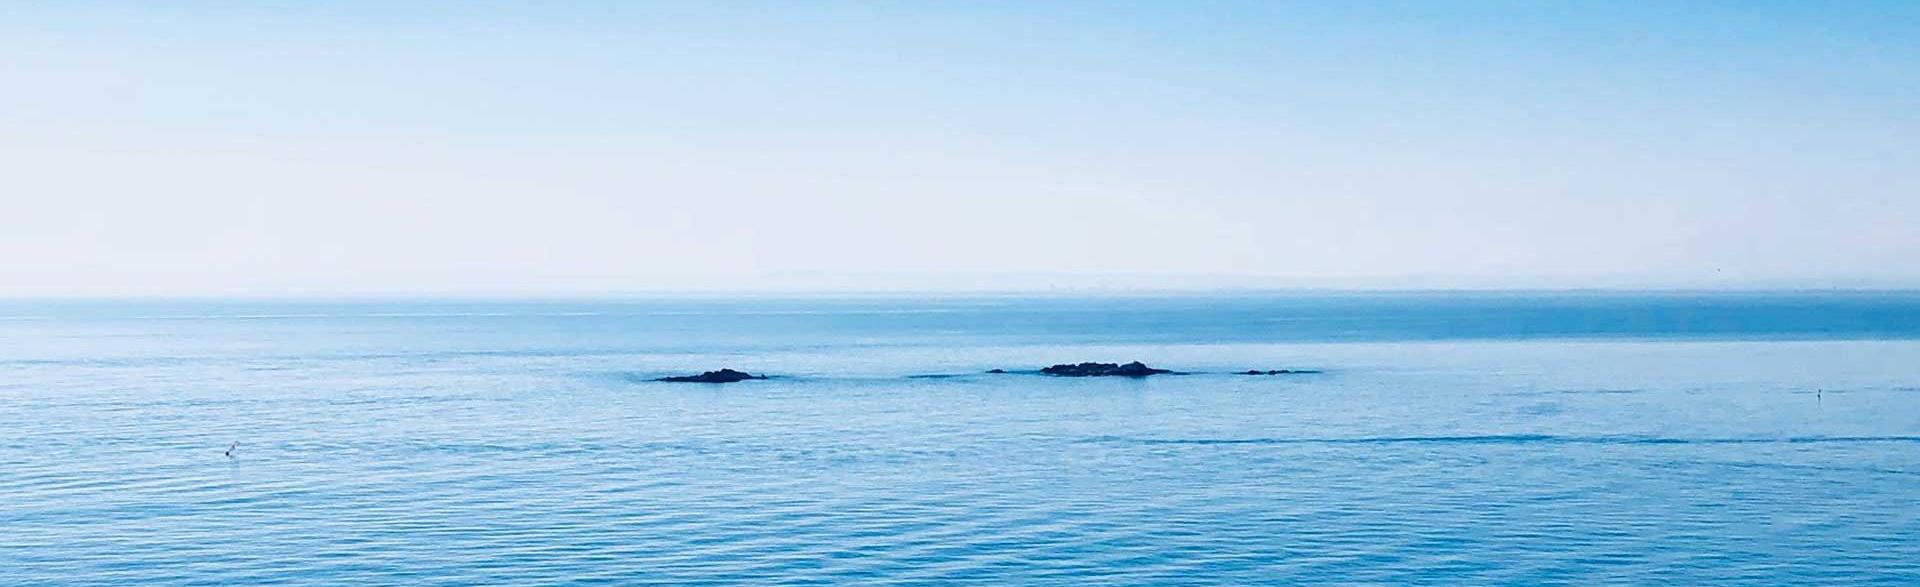 Мирный вид на море с островами Элс Брансс